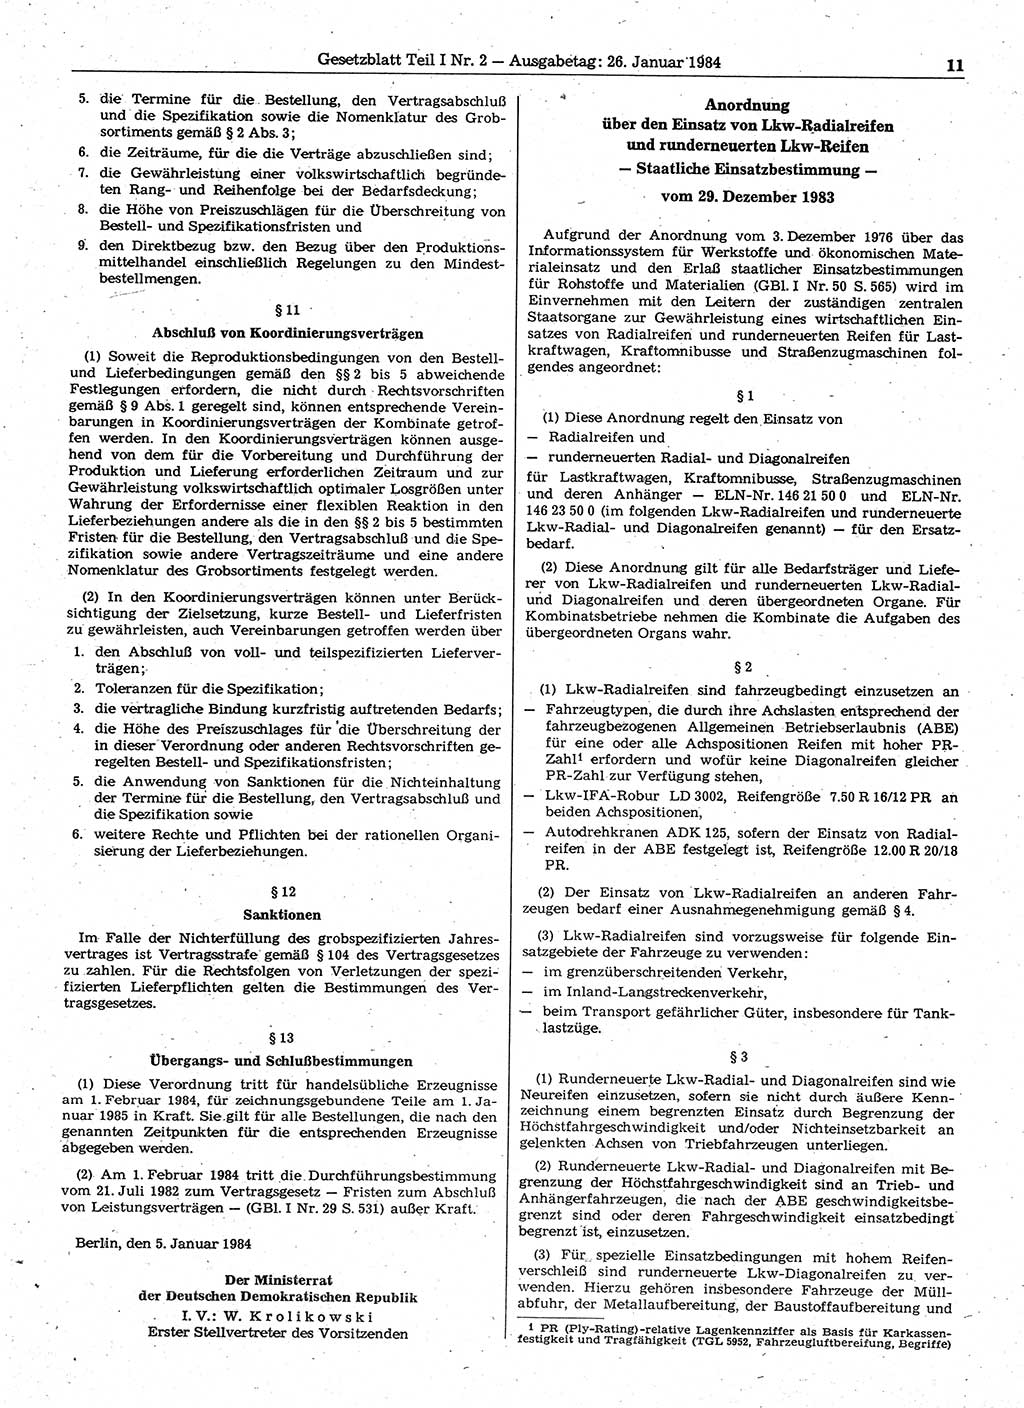 Gesetzblatt (GBl.) der Deutschen Demokratischen Republik (DDR) Teil Ⅰ 1984, Seite 11 (GBl. DDR Ⅰ 1984, S. 11)